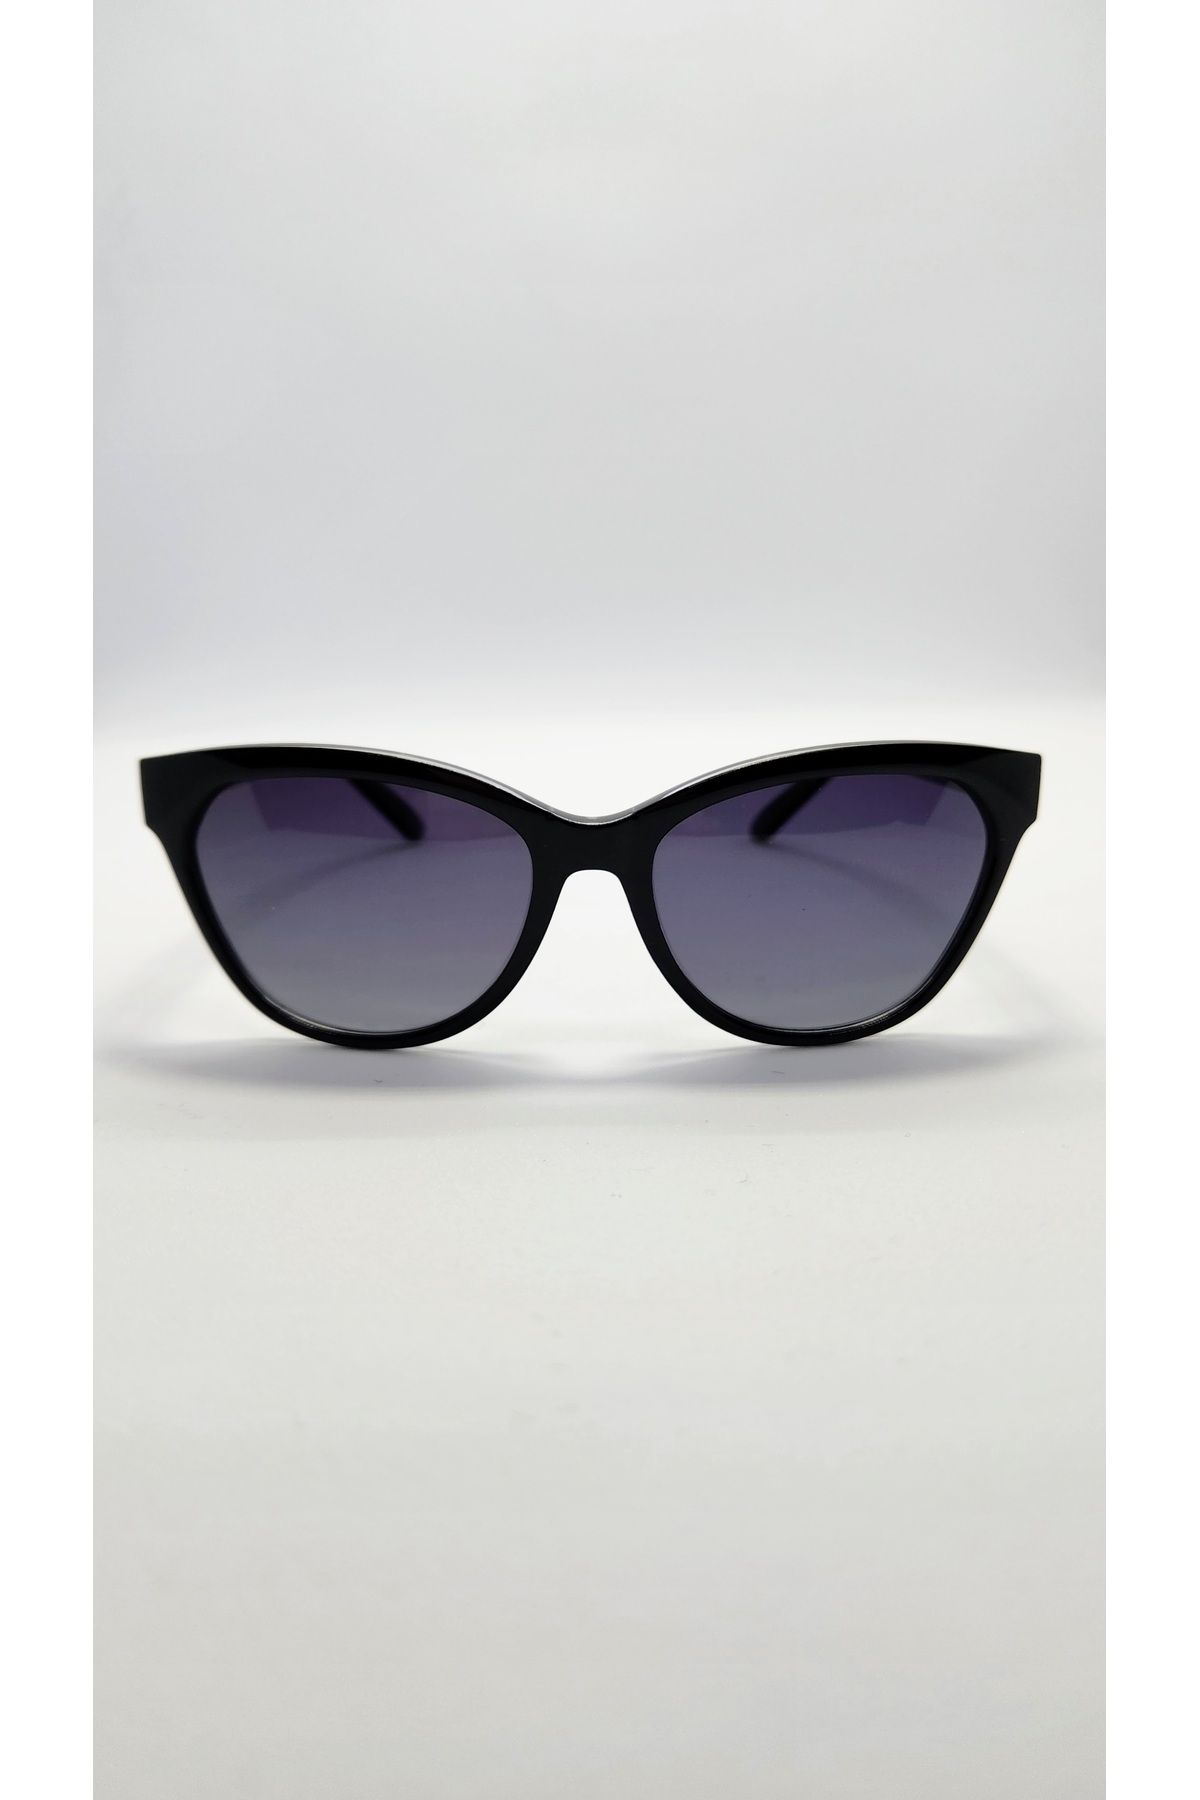 Benx Sunglasses Siyah Çekik Model Kadın Güneş Gözlüğü